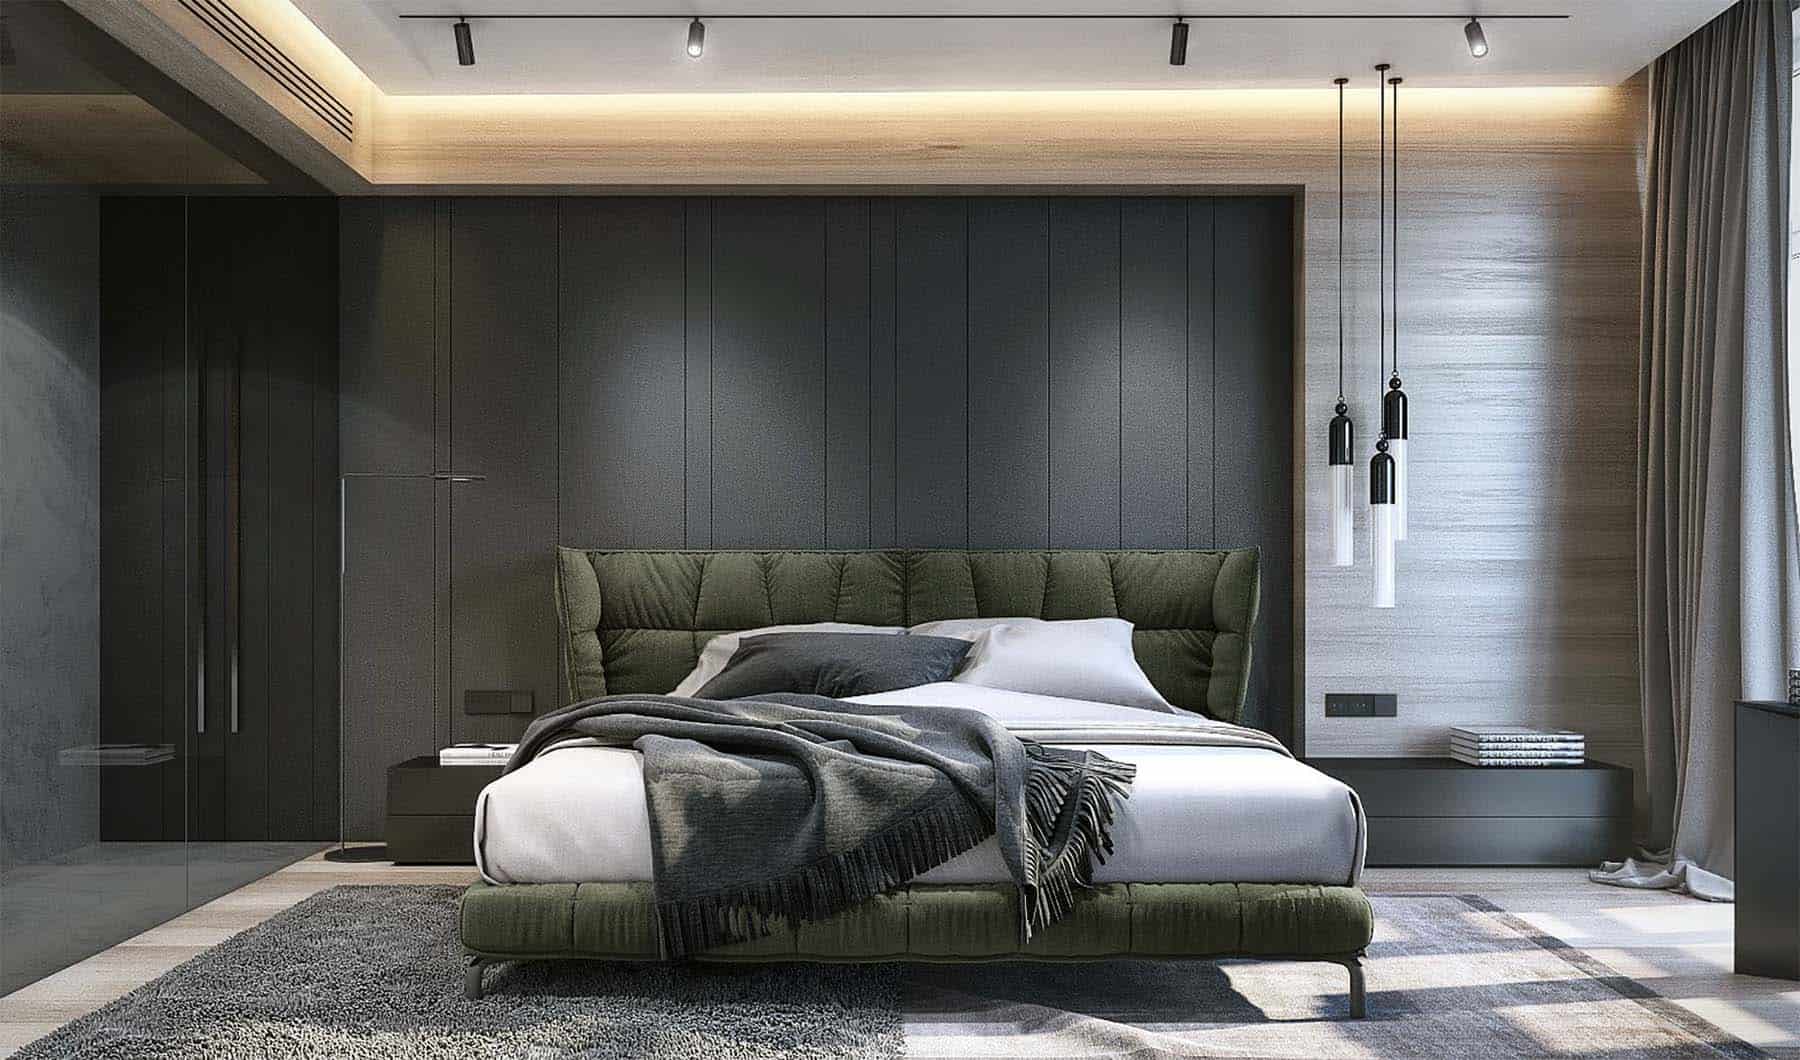 Structural Spotlight neutral bedroom ideas